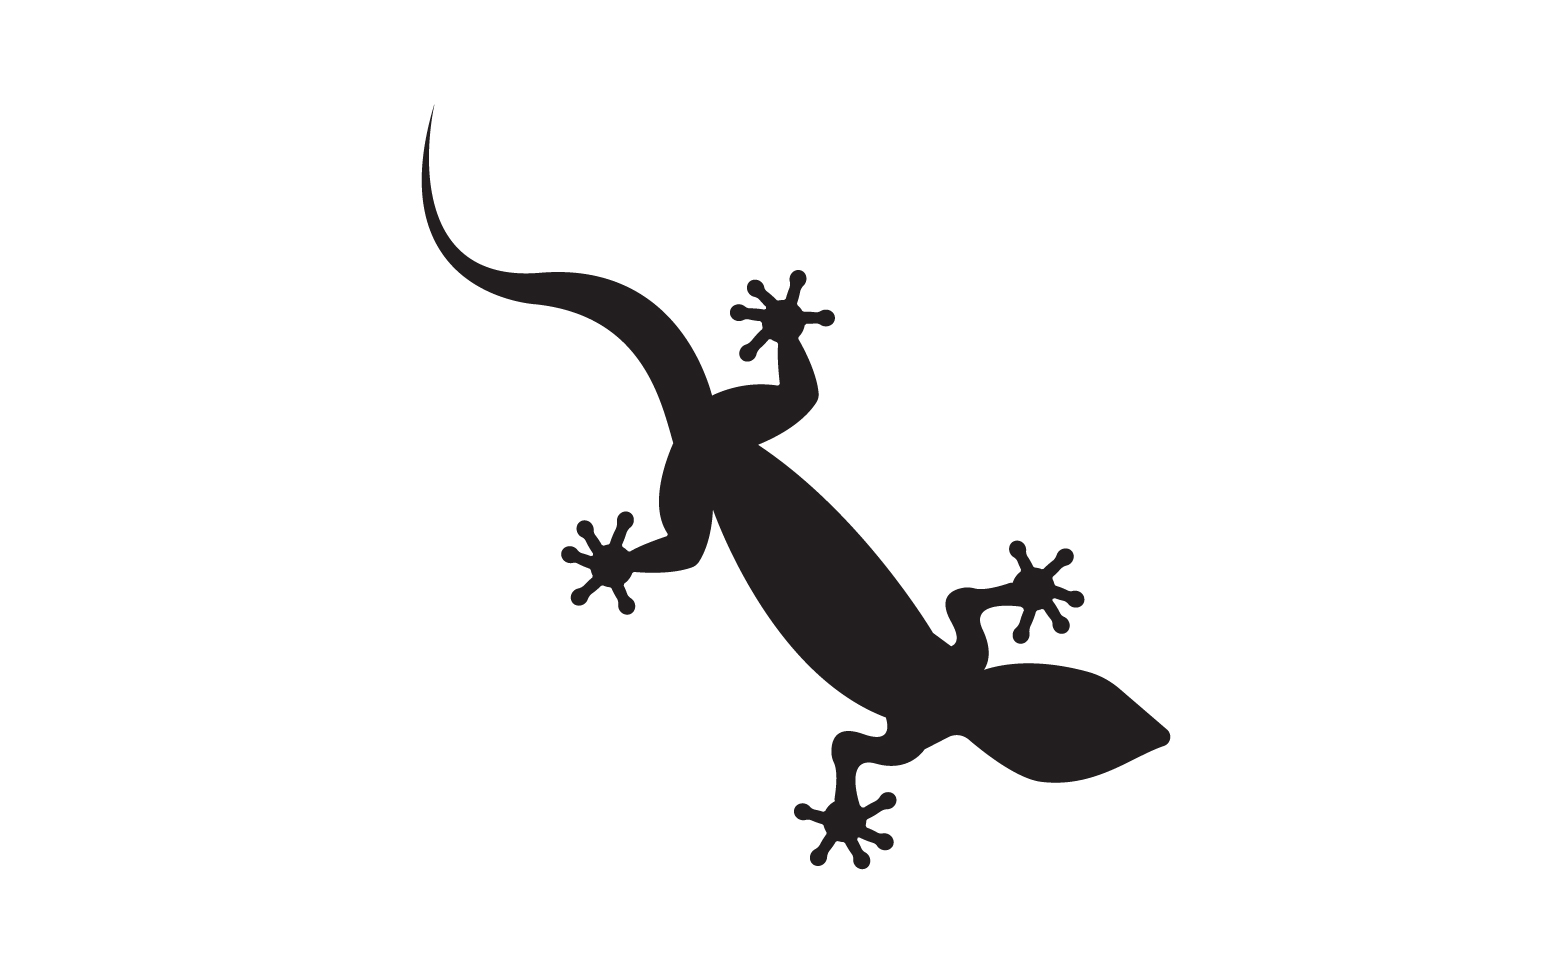 Lizard chameleon home lizard logo v56